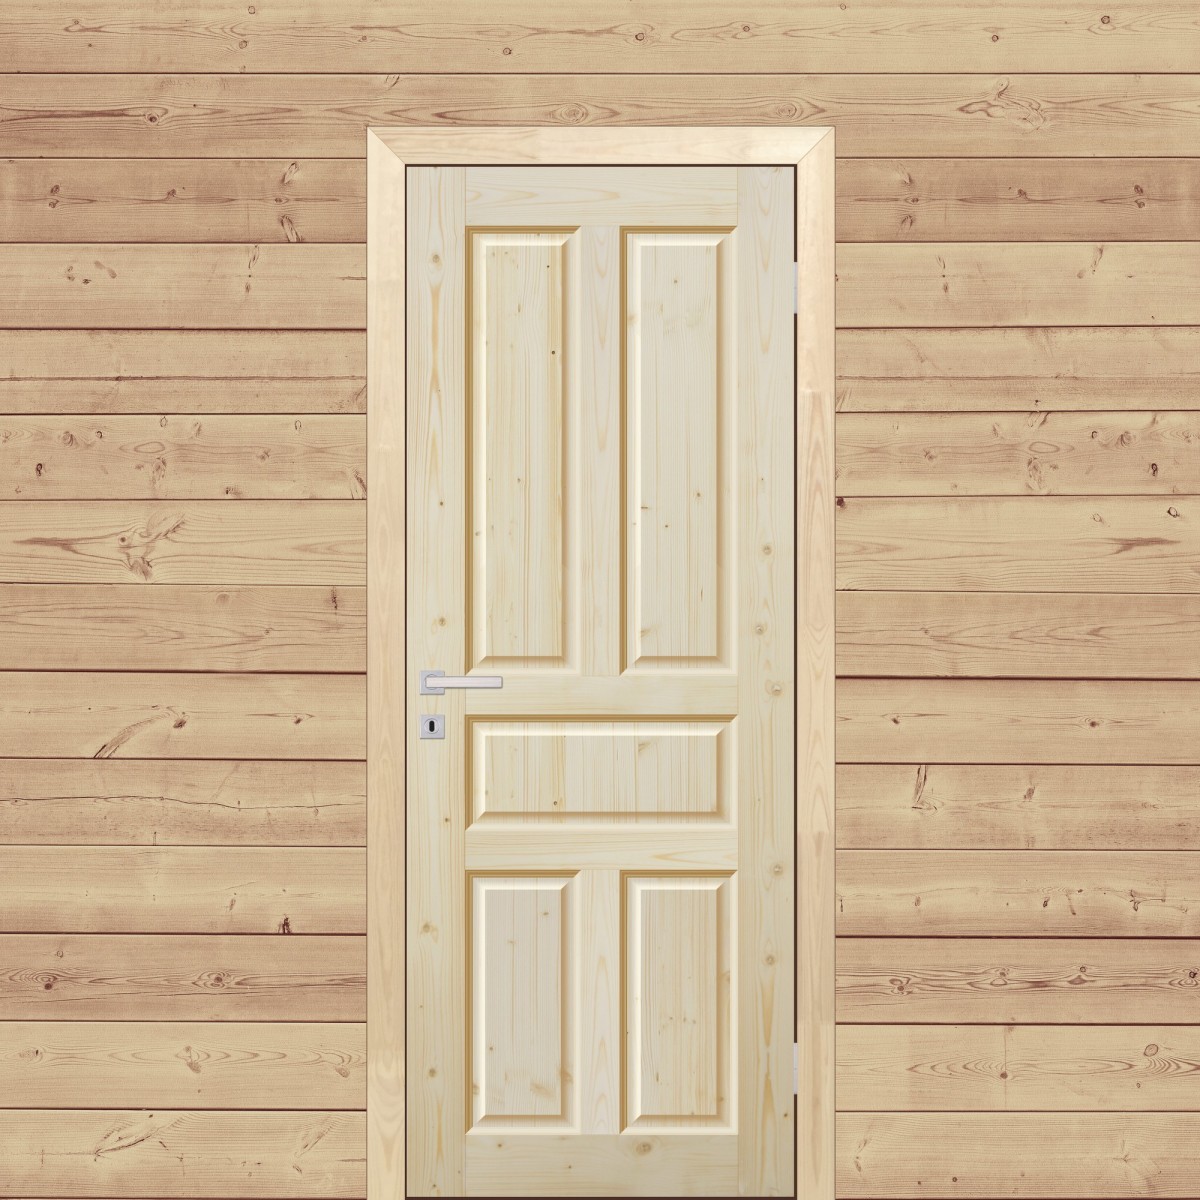 Дверь межкомнатная глухая Кантри 70x200 см, массив хвои, цвет натуральный